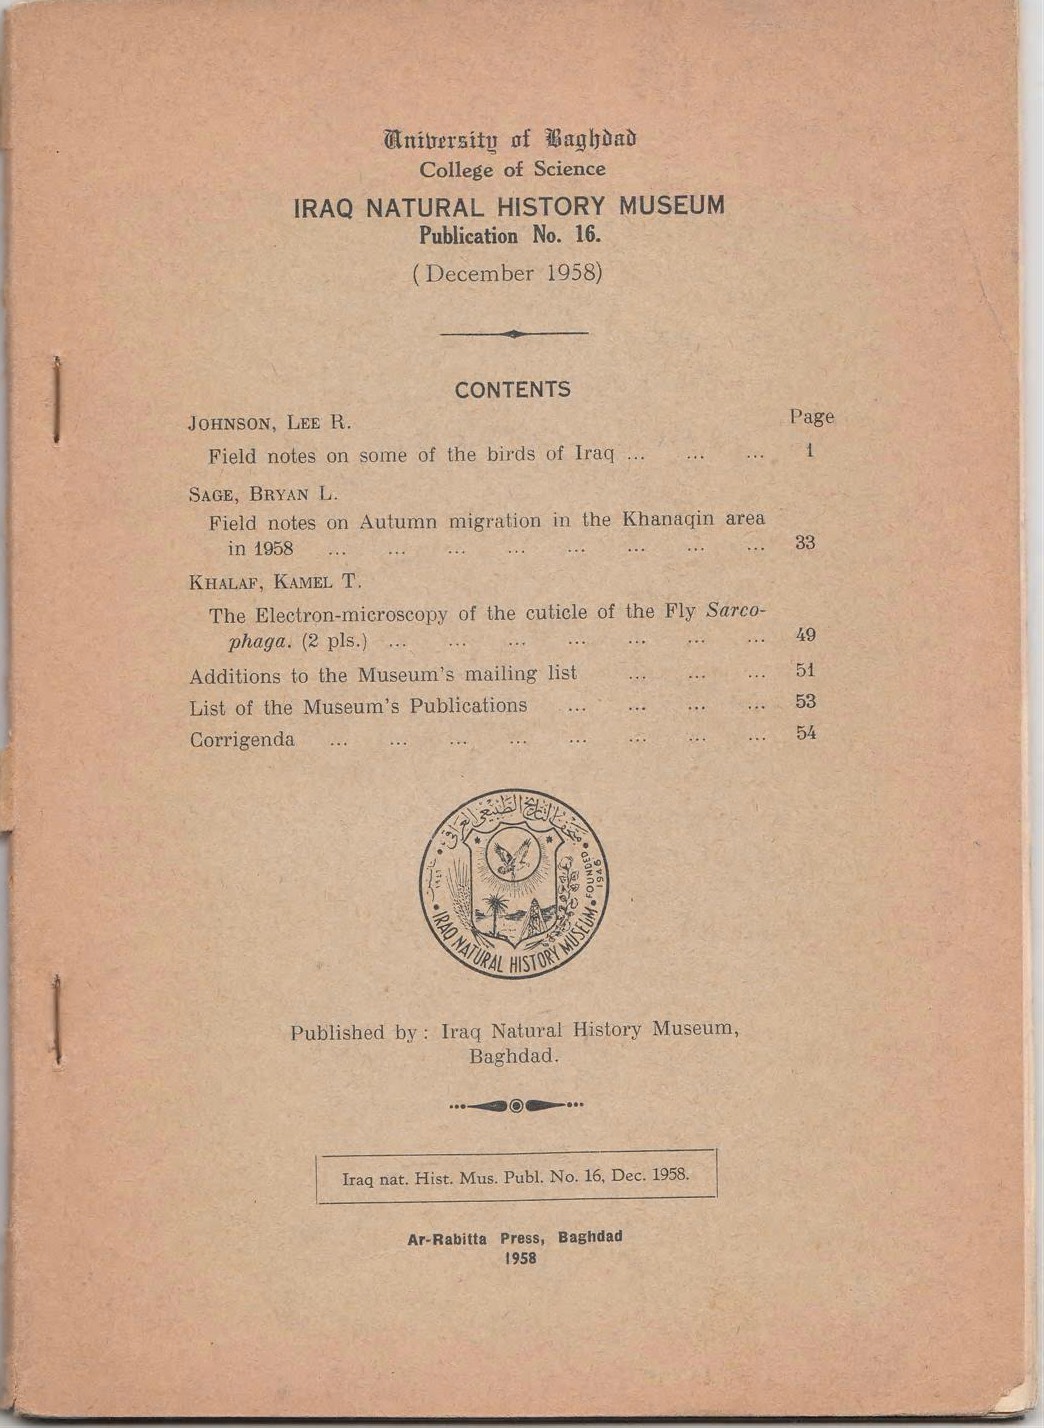 					معاينة عدد 16 (1958): The Electron-microscopy of the cuticle of the Fly Sarco- phaga. (2 pls.)by KHALAF, KAMEL T.  p; 49
				